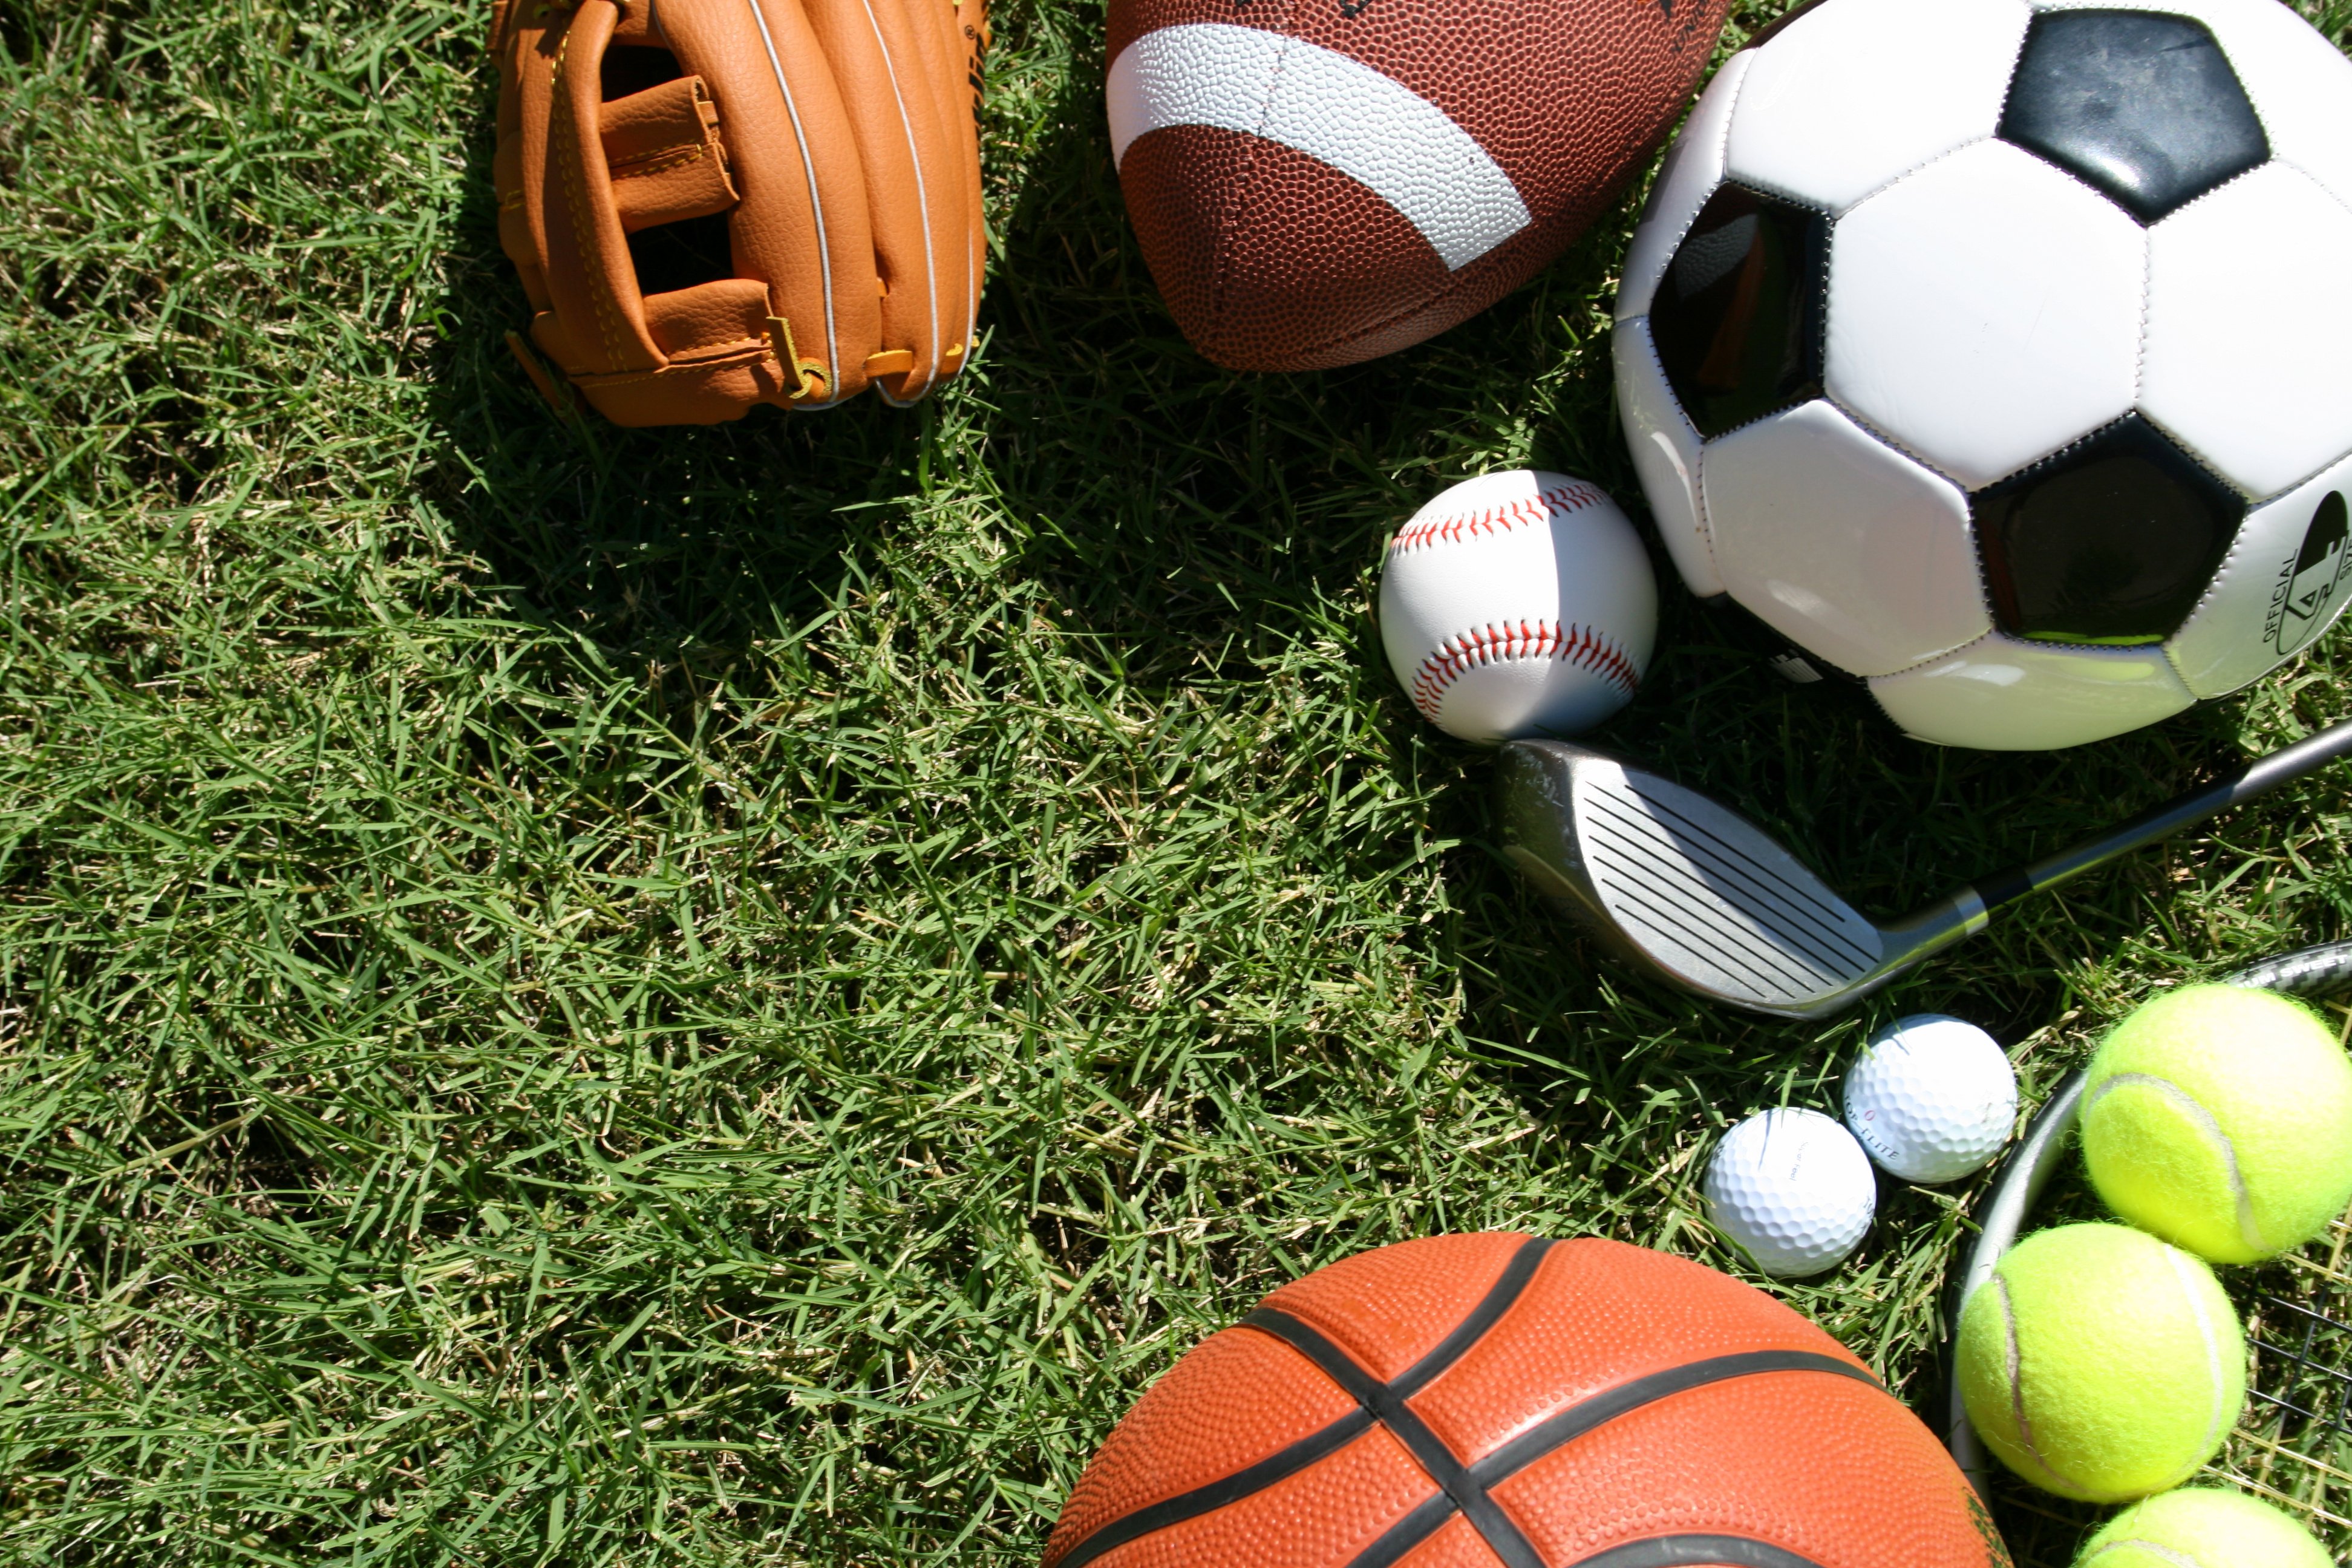 Sports items. Спортивный инвентарь. Спортивные мячи. Спортивный инвентарь для футбола. Спортивный инвентарь на траве.